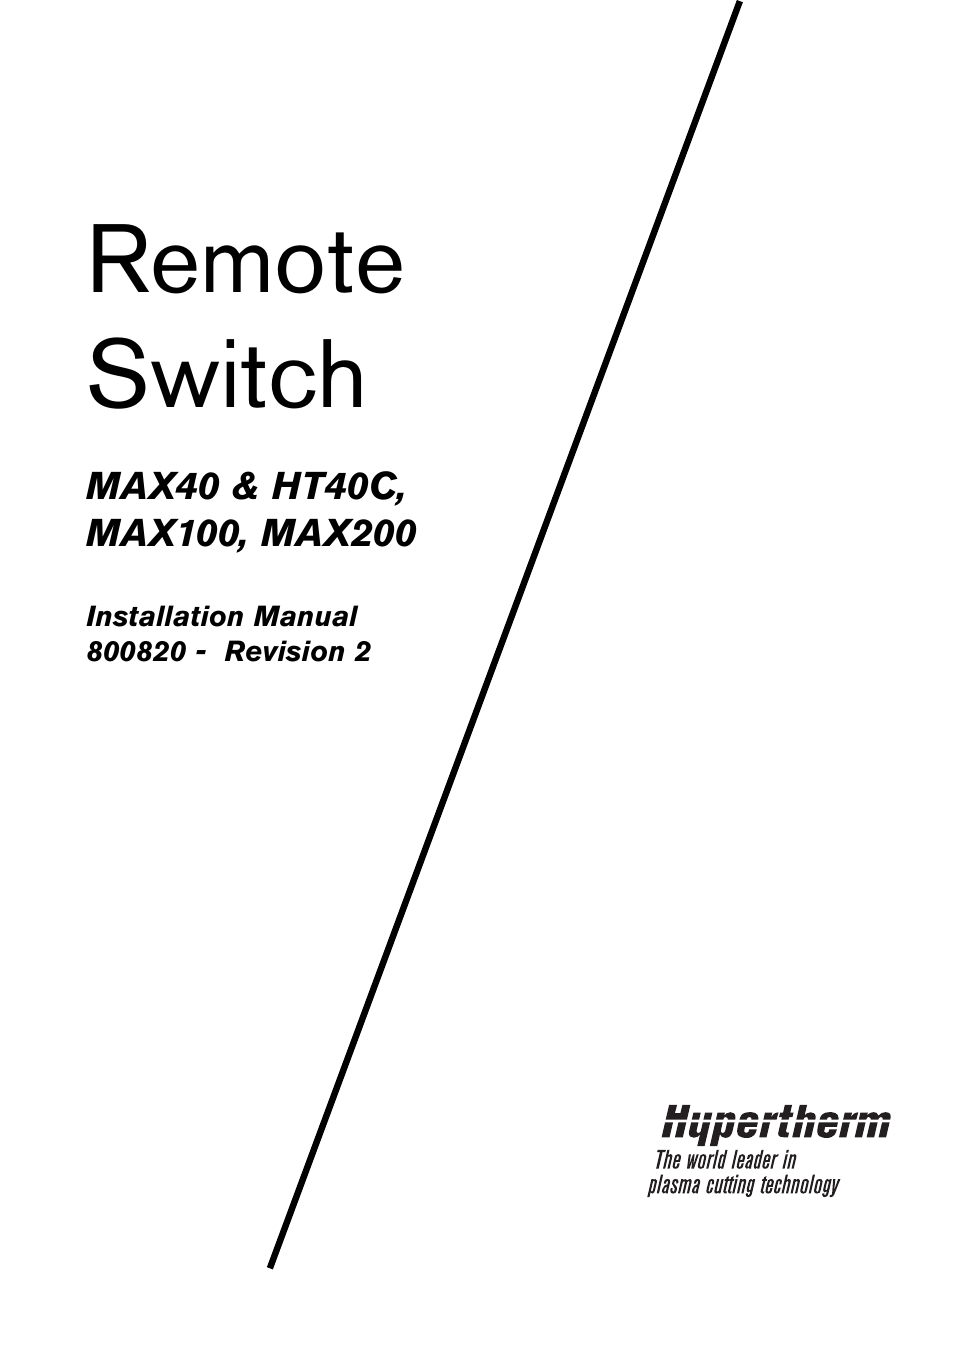 MAX100 Remote Switch